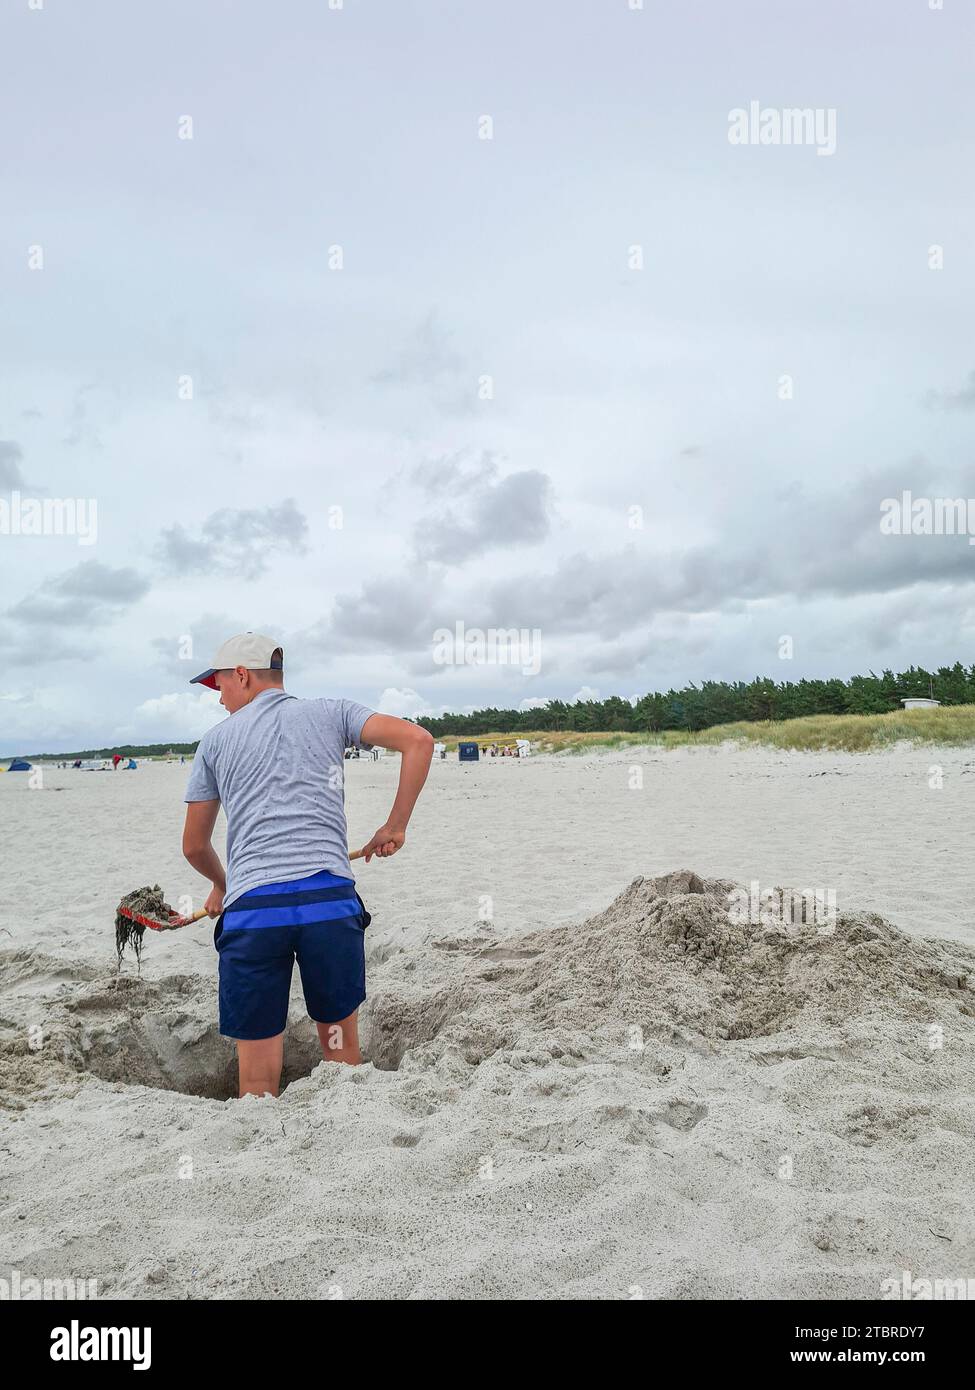 Germania, Meclemburgo-Pomerania occidentale, penisola Fischland-Darß-Zingst, Prerow, un adolescente si trova in un buco di sabbia sulla spiaggia con una pala di alghe in mano Foto Stock